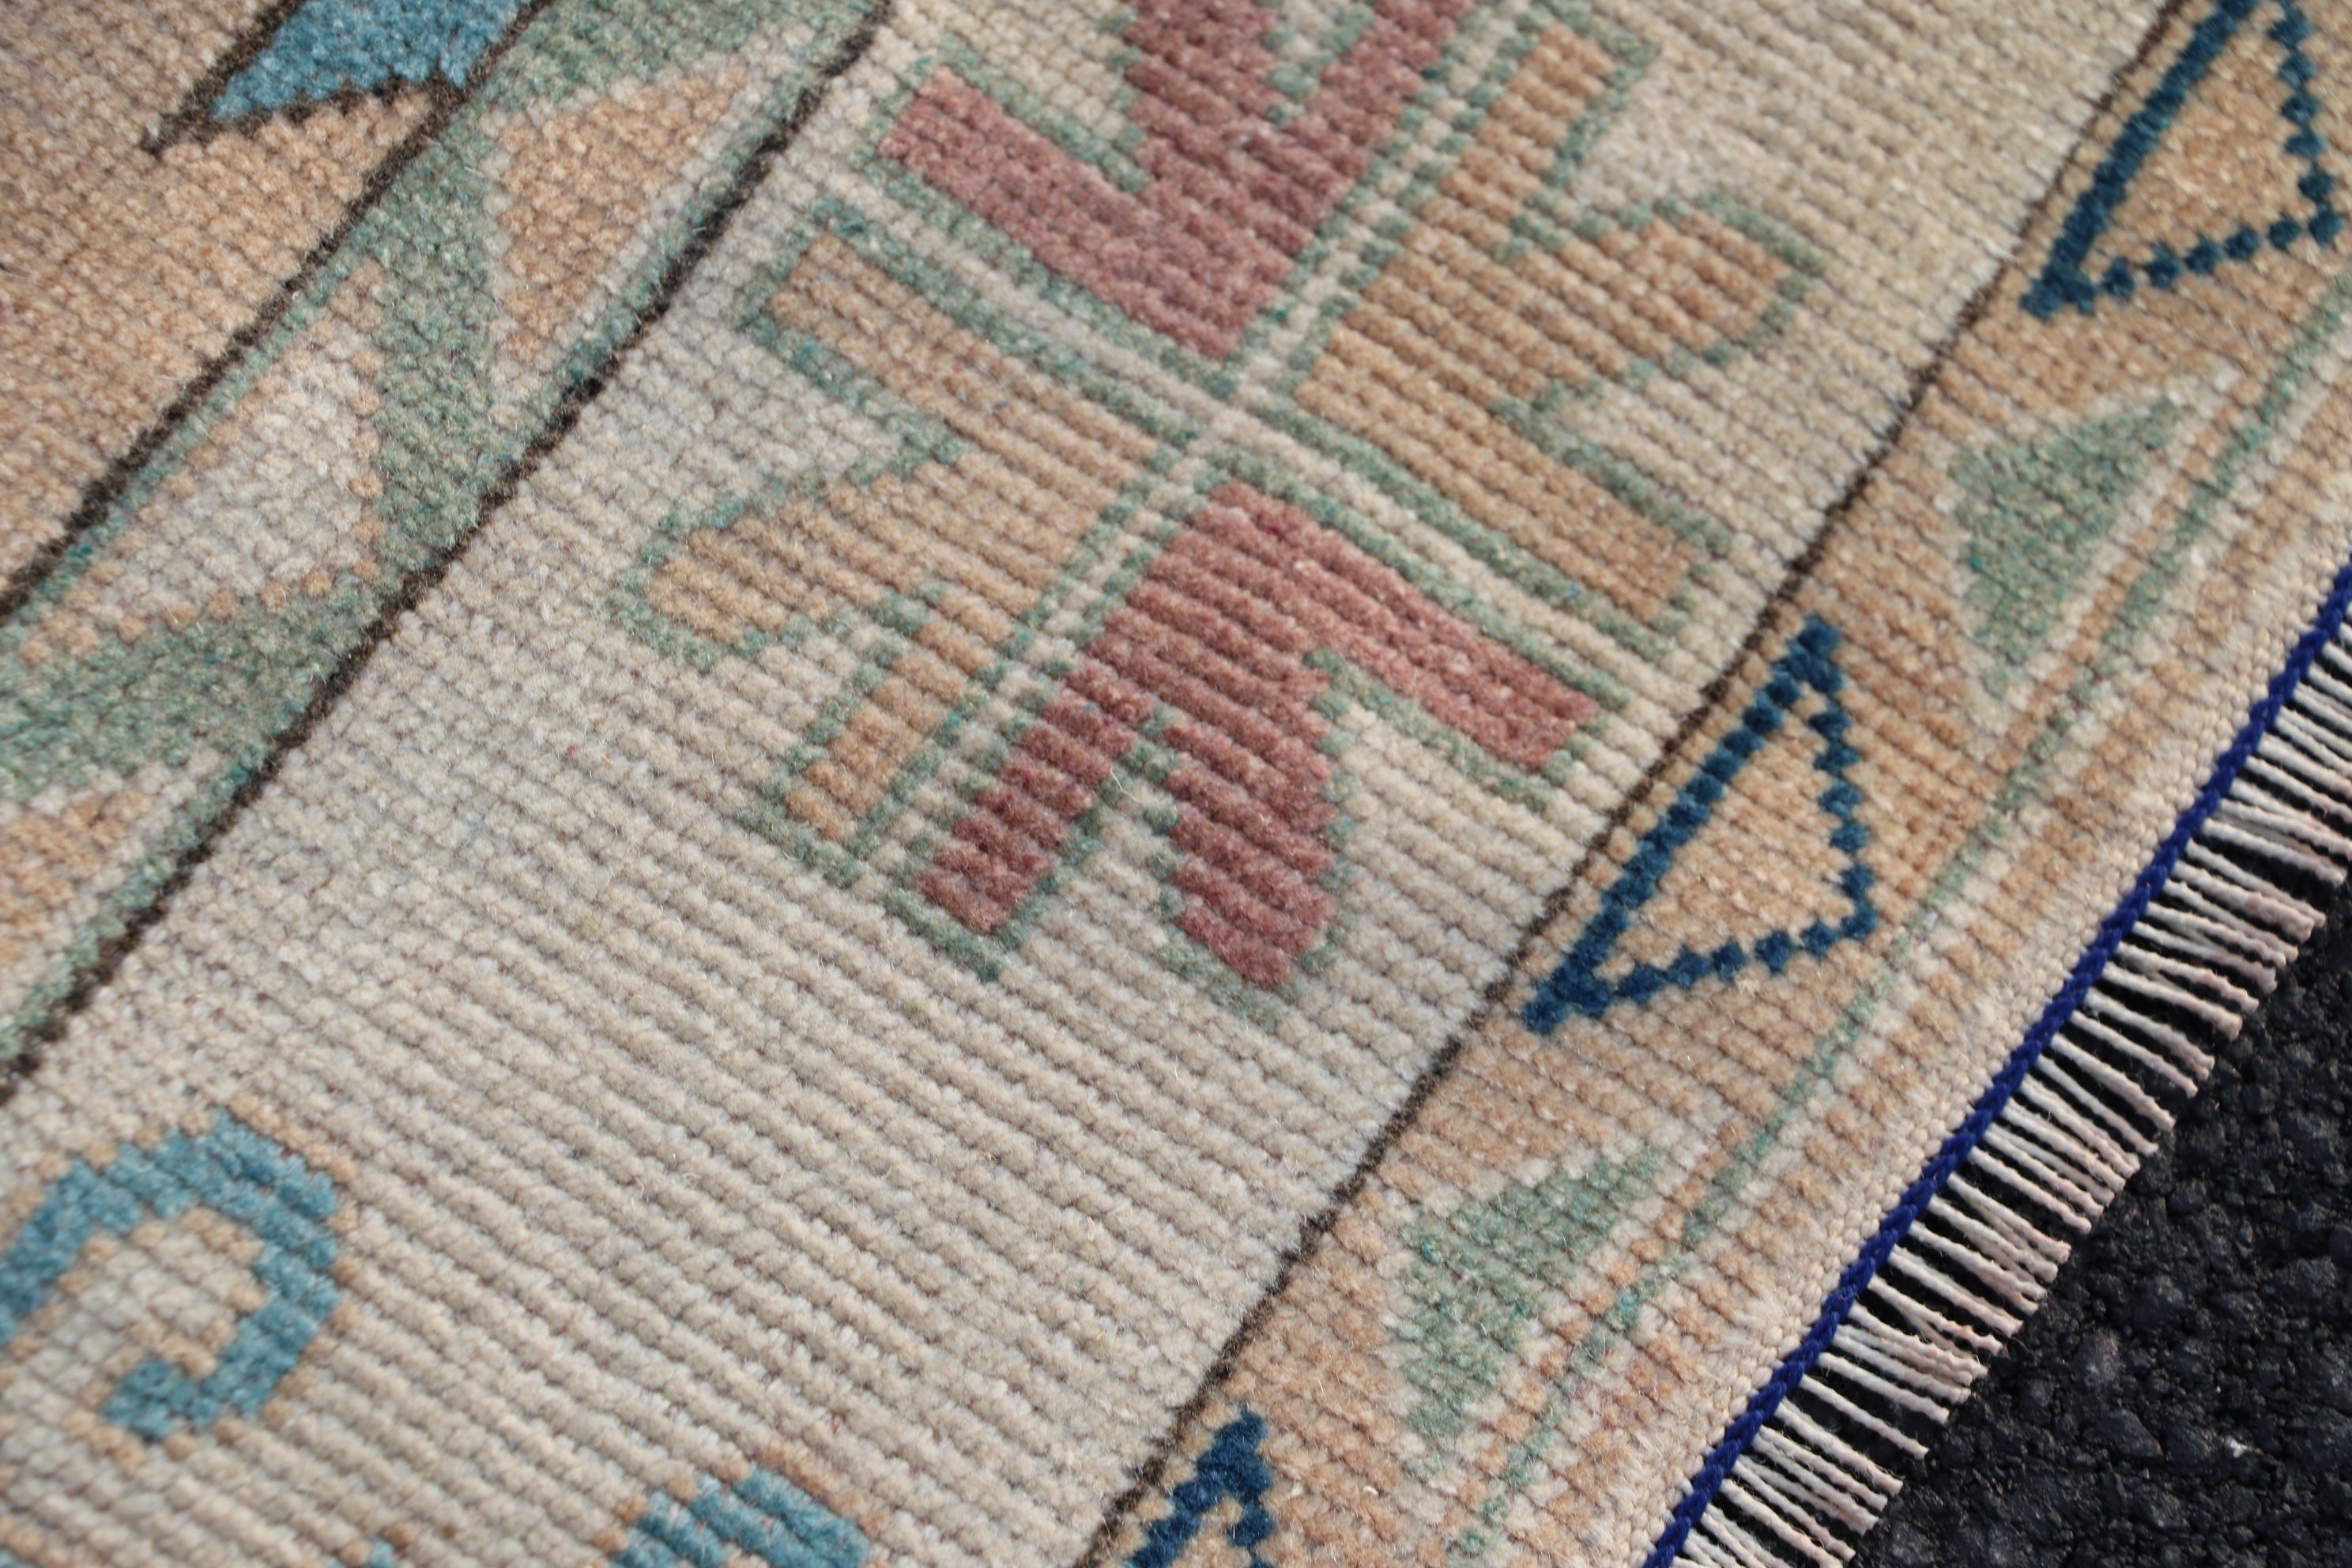 Anatolian Rug, Vintage Rugs, Oriental Rugs, 4.3x6.4 ft Area Rugs, Rugs for Floor, Turkish Rug, Tribal Rugs, Pink Oriental Rugs, Nursery Rug